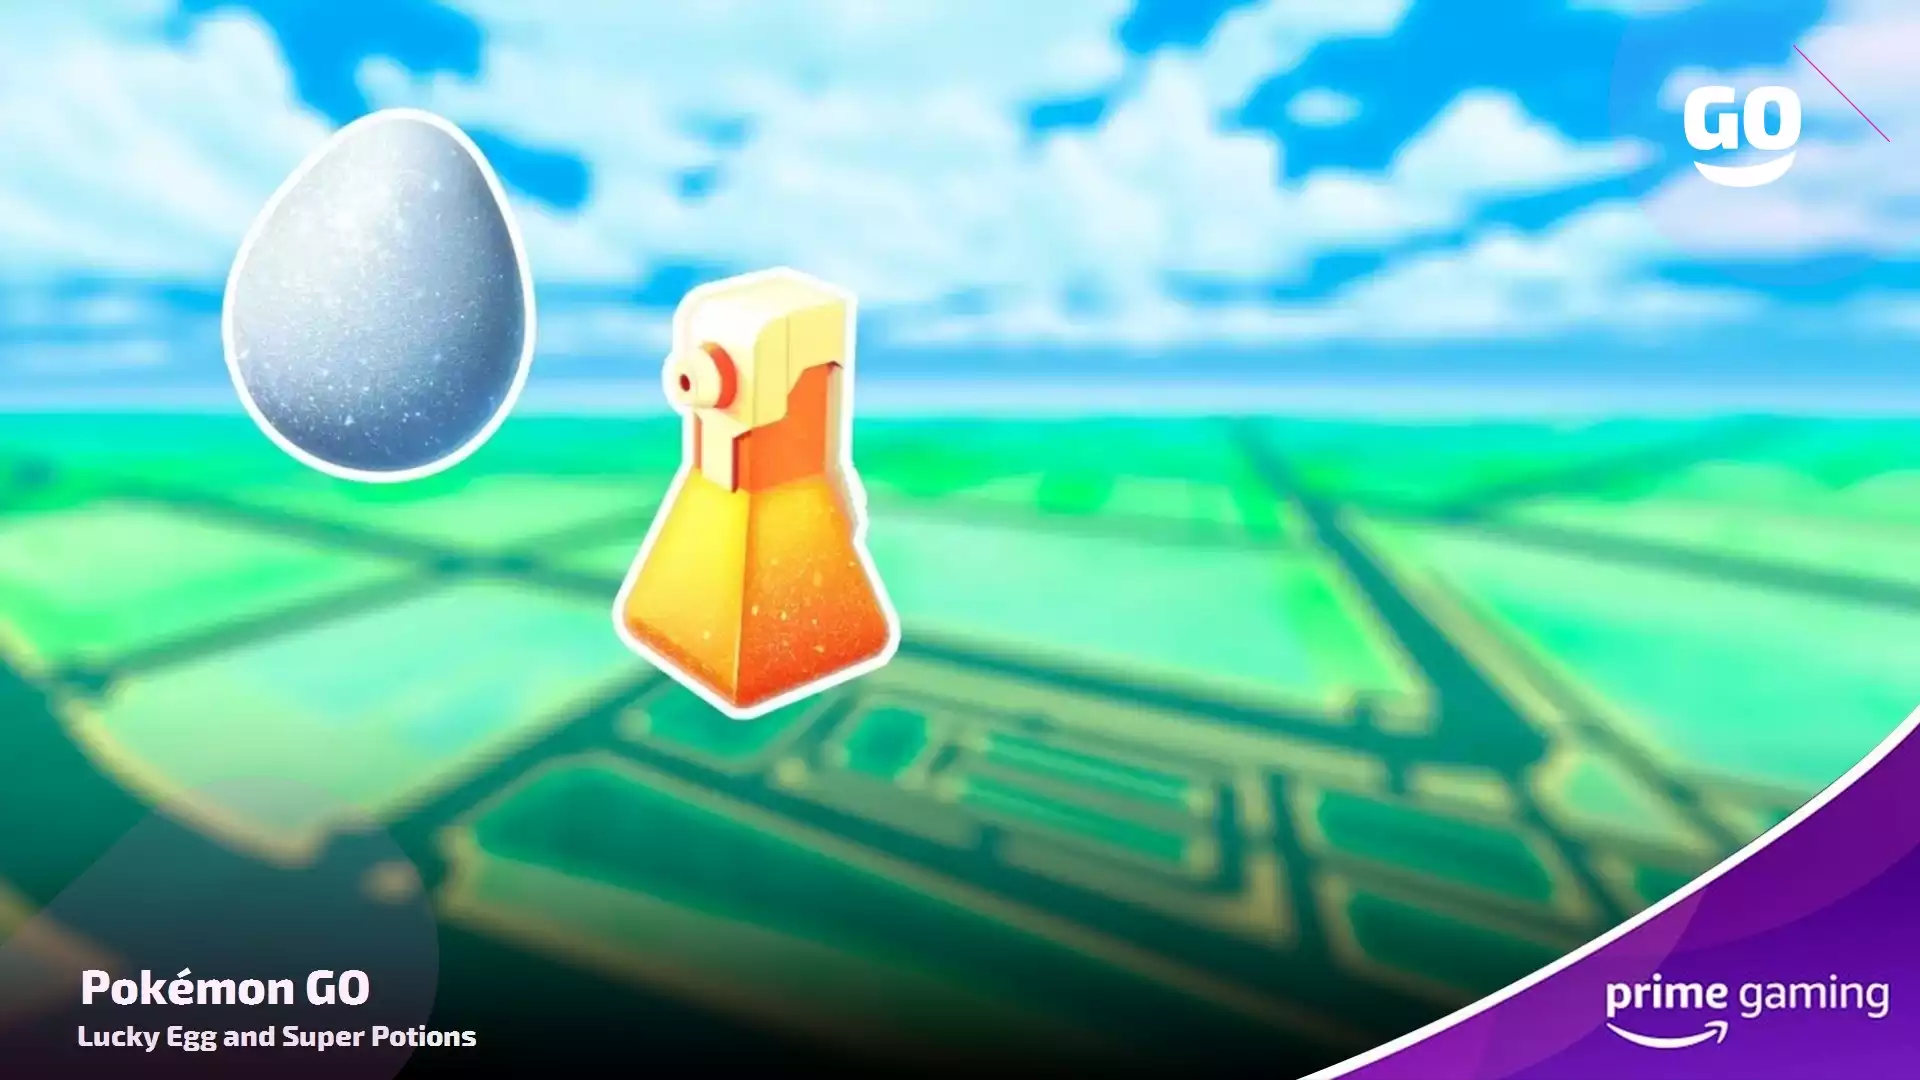 Prime Gaming предлагает облики и подарки для Pokémon GO